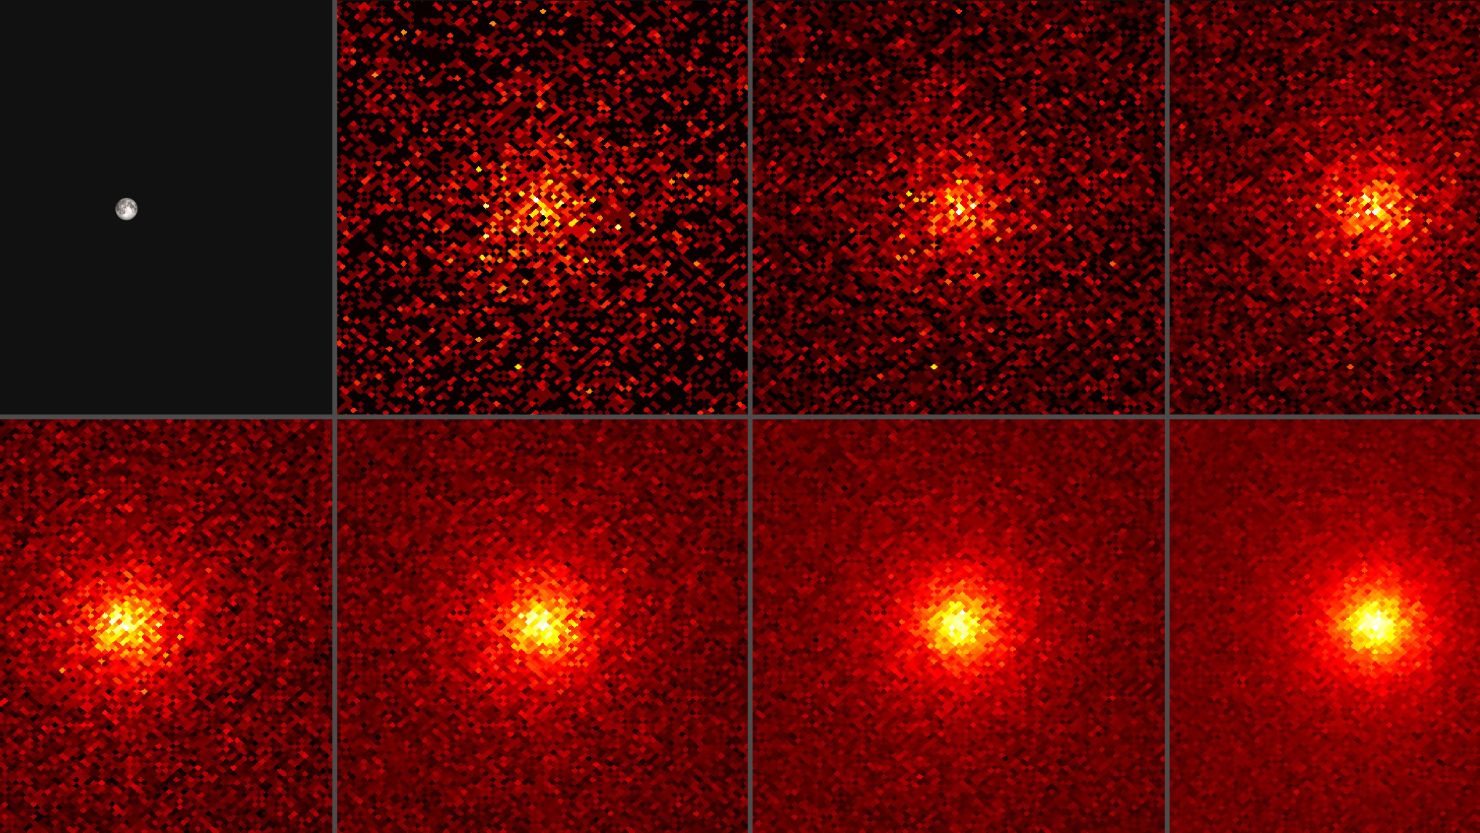 https://media.cnn.com/api/v1/images/stellar/prod/190816133536-moon-glow-nasa-fermi.jpg?q=x_213,y_0,h_2161,w_3840,c_crop/h_833,w_1480